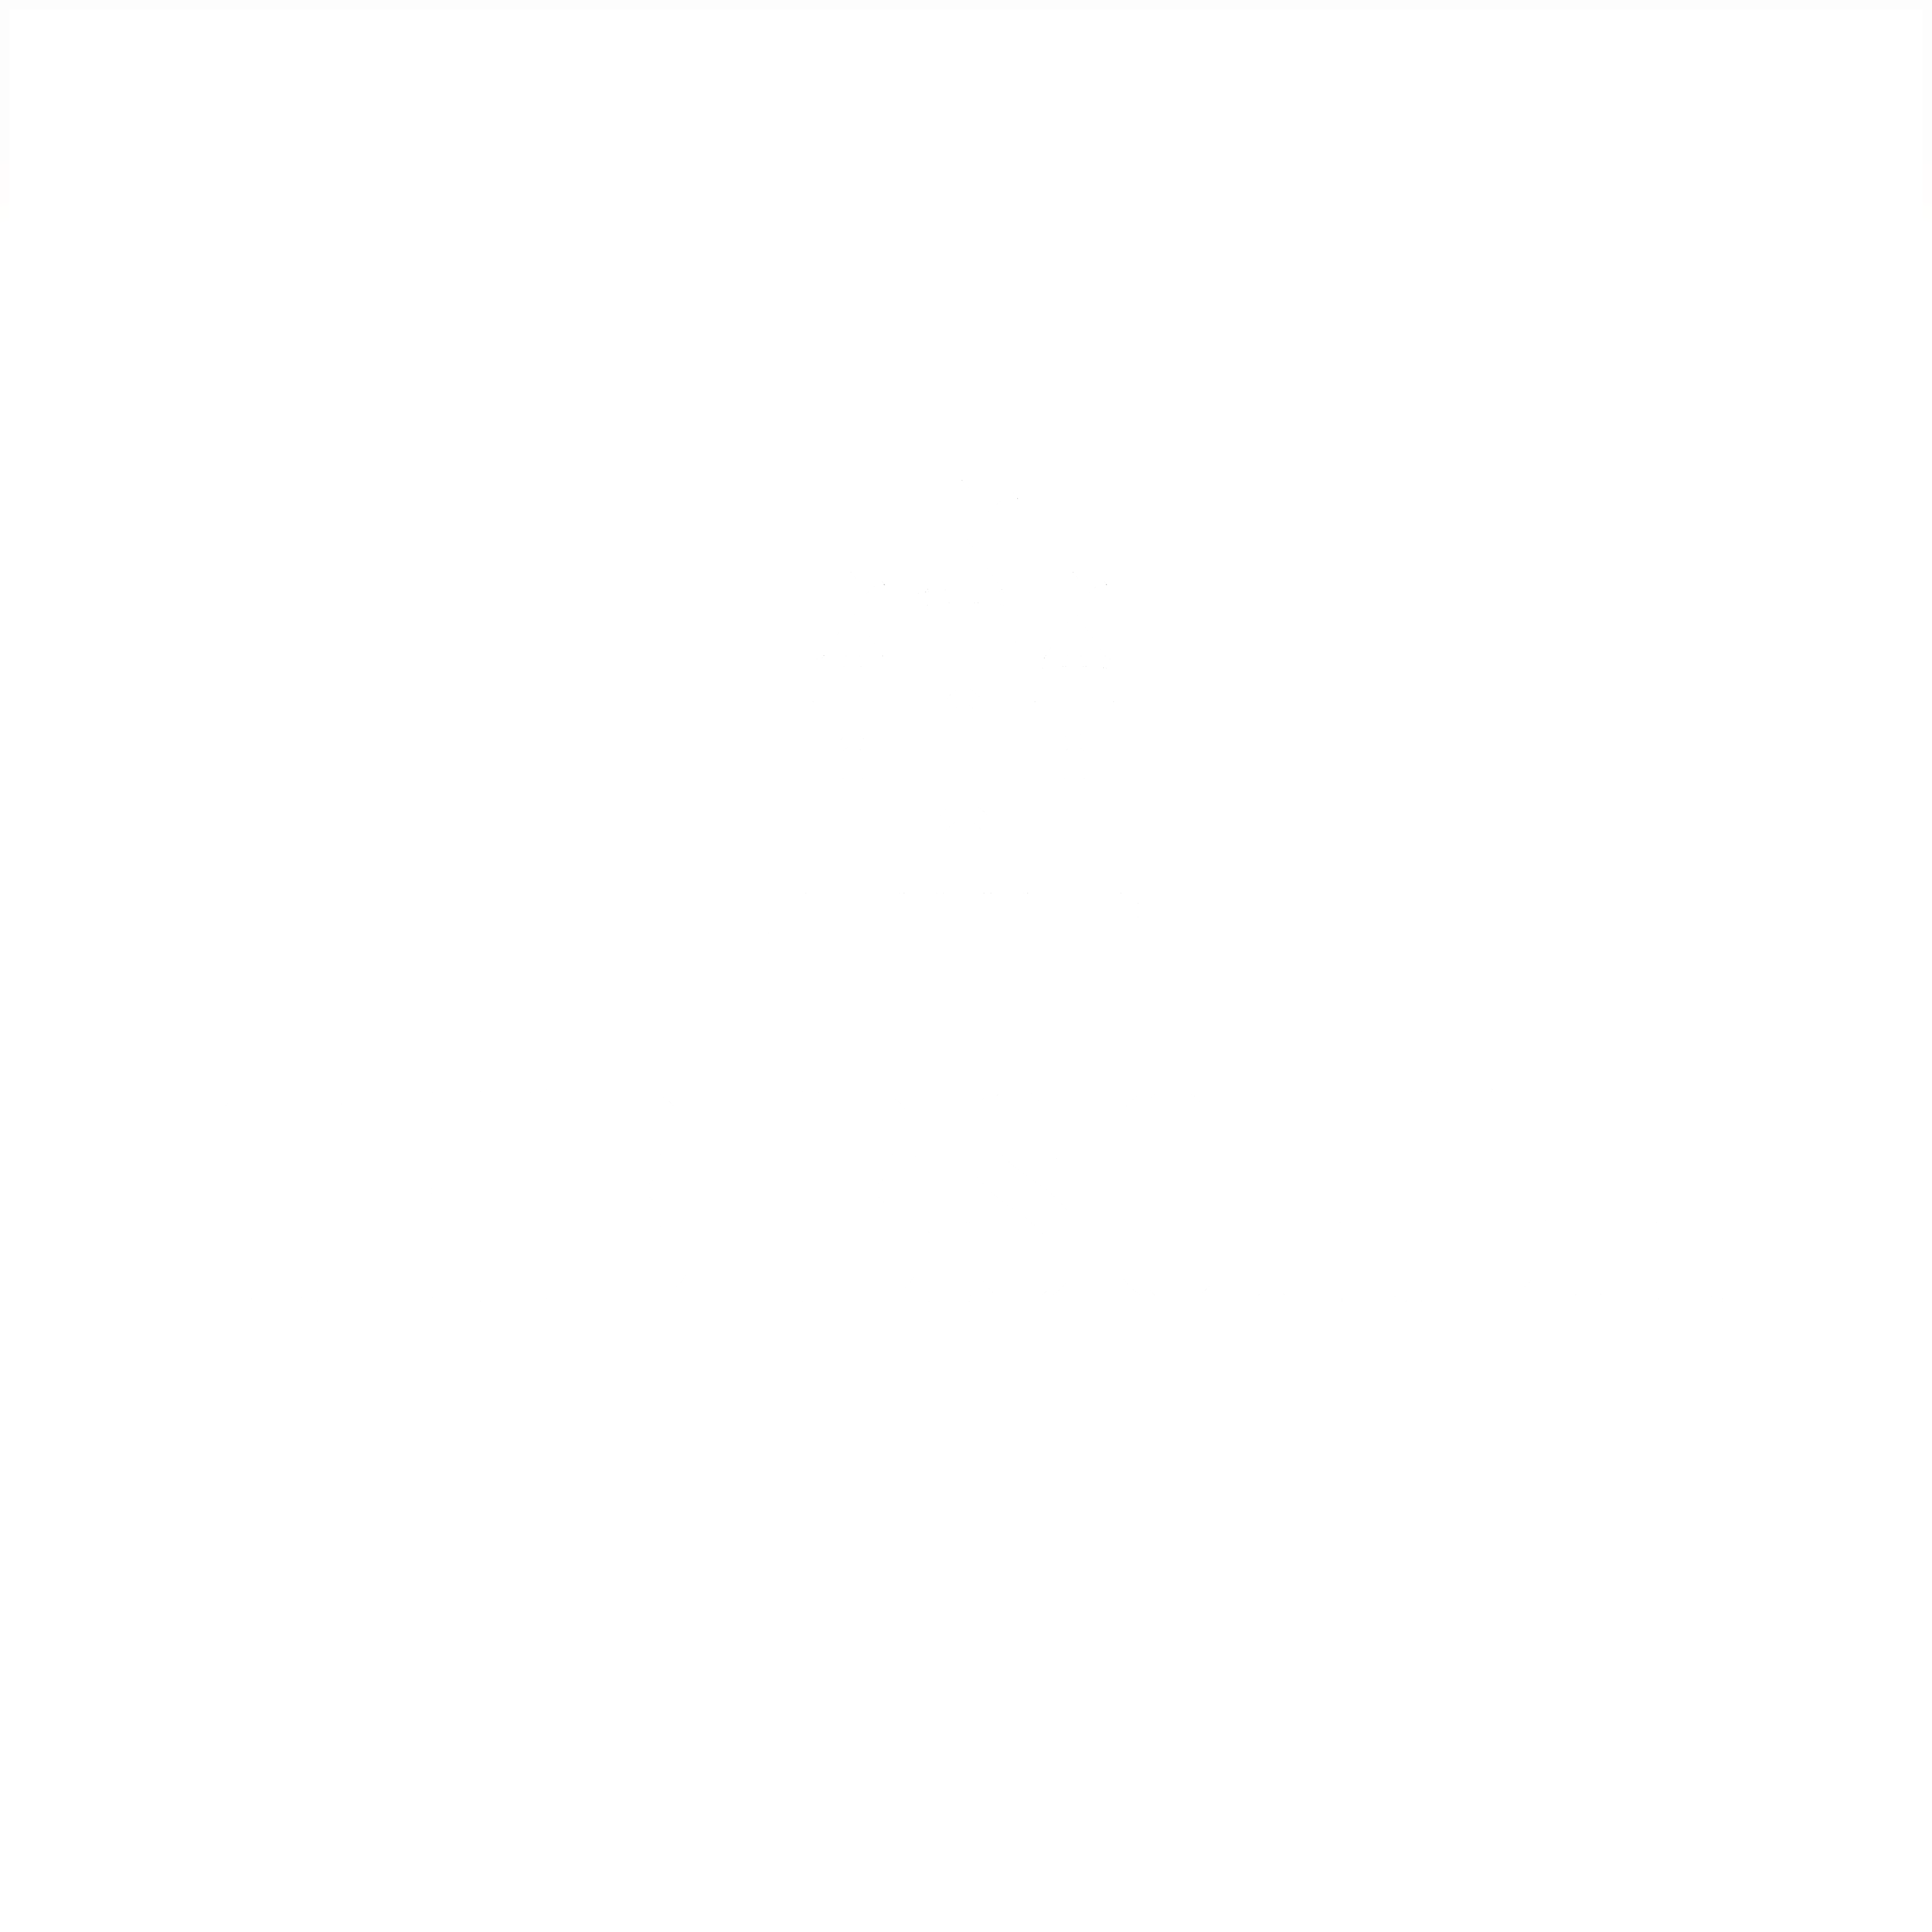 THE ESCALA